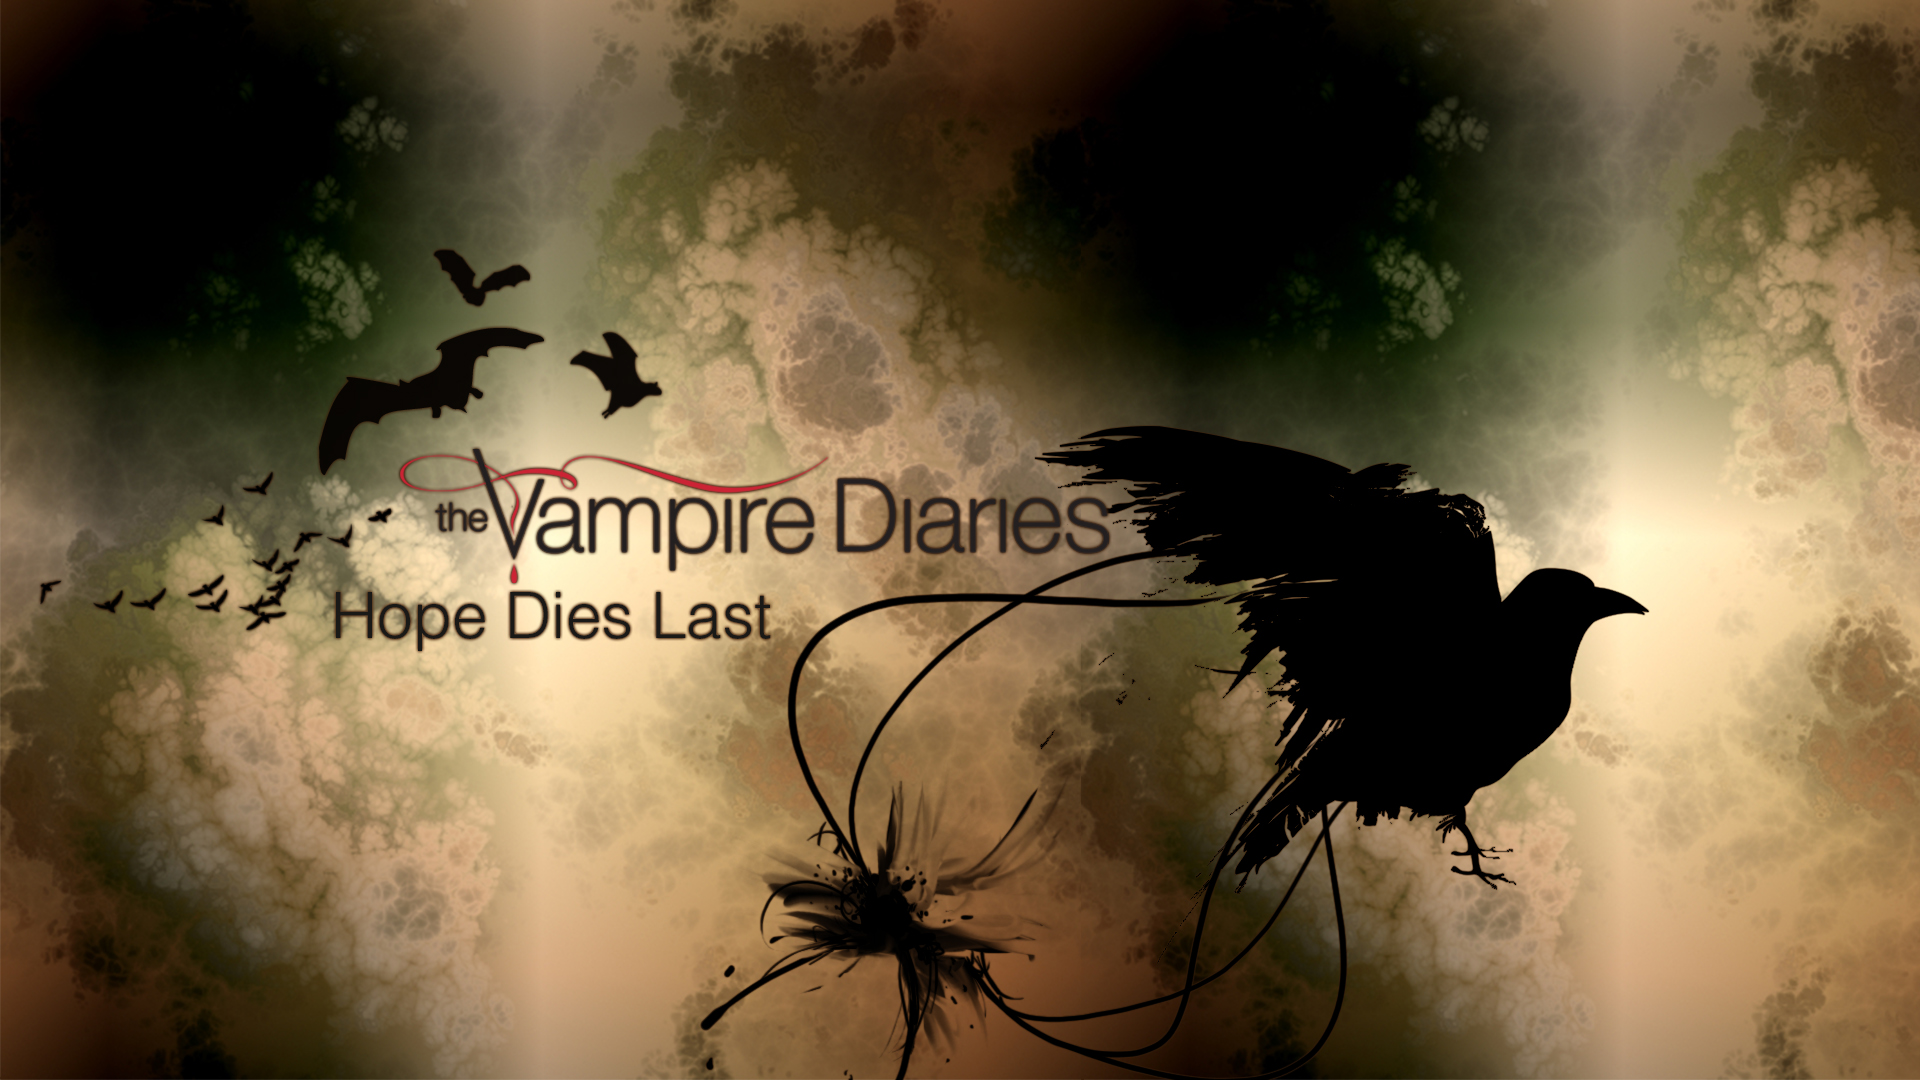 Vampire Diaries images The Vampire Diaries Wallpaper Series wallpaper